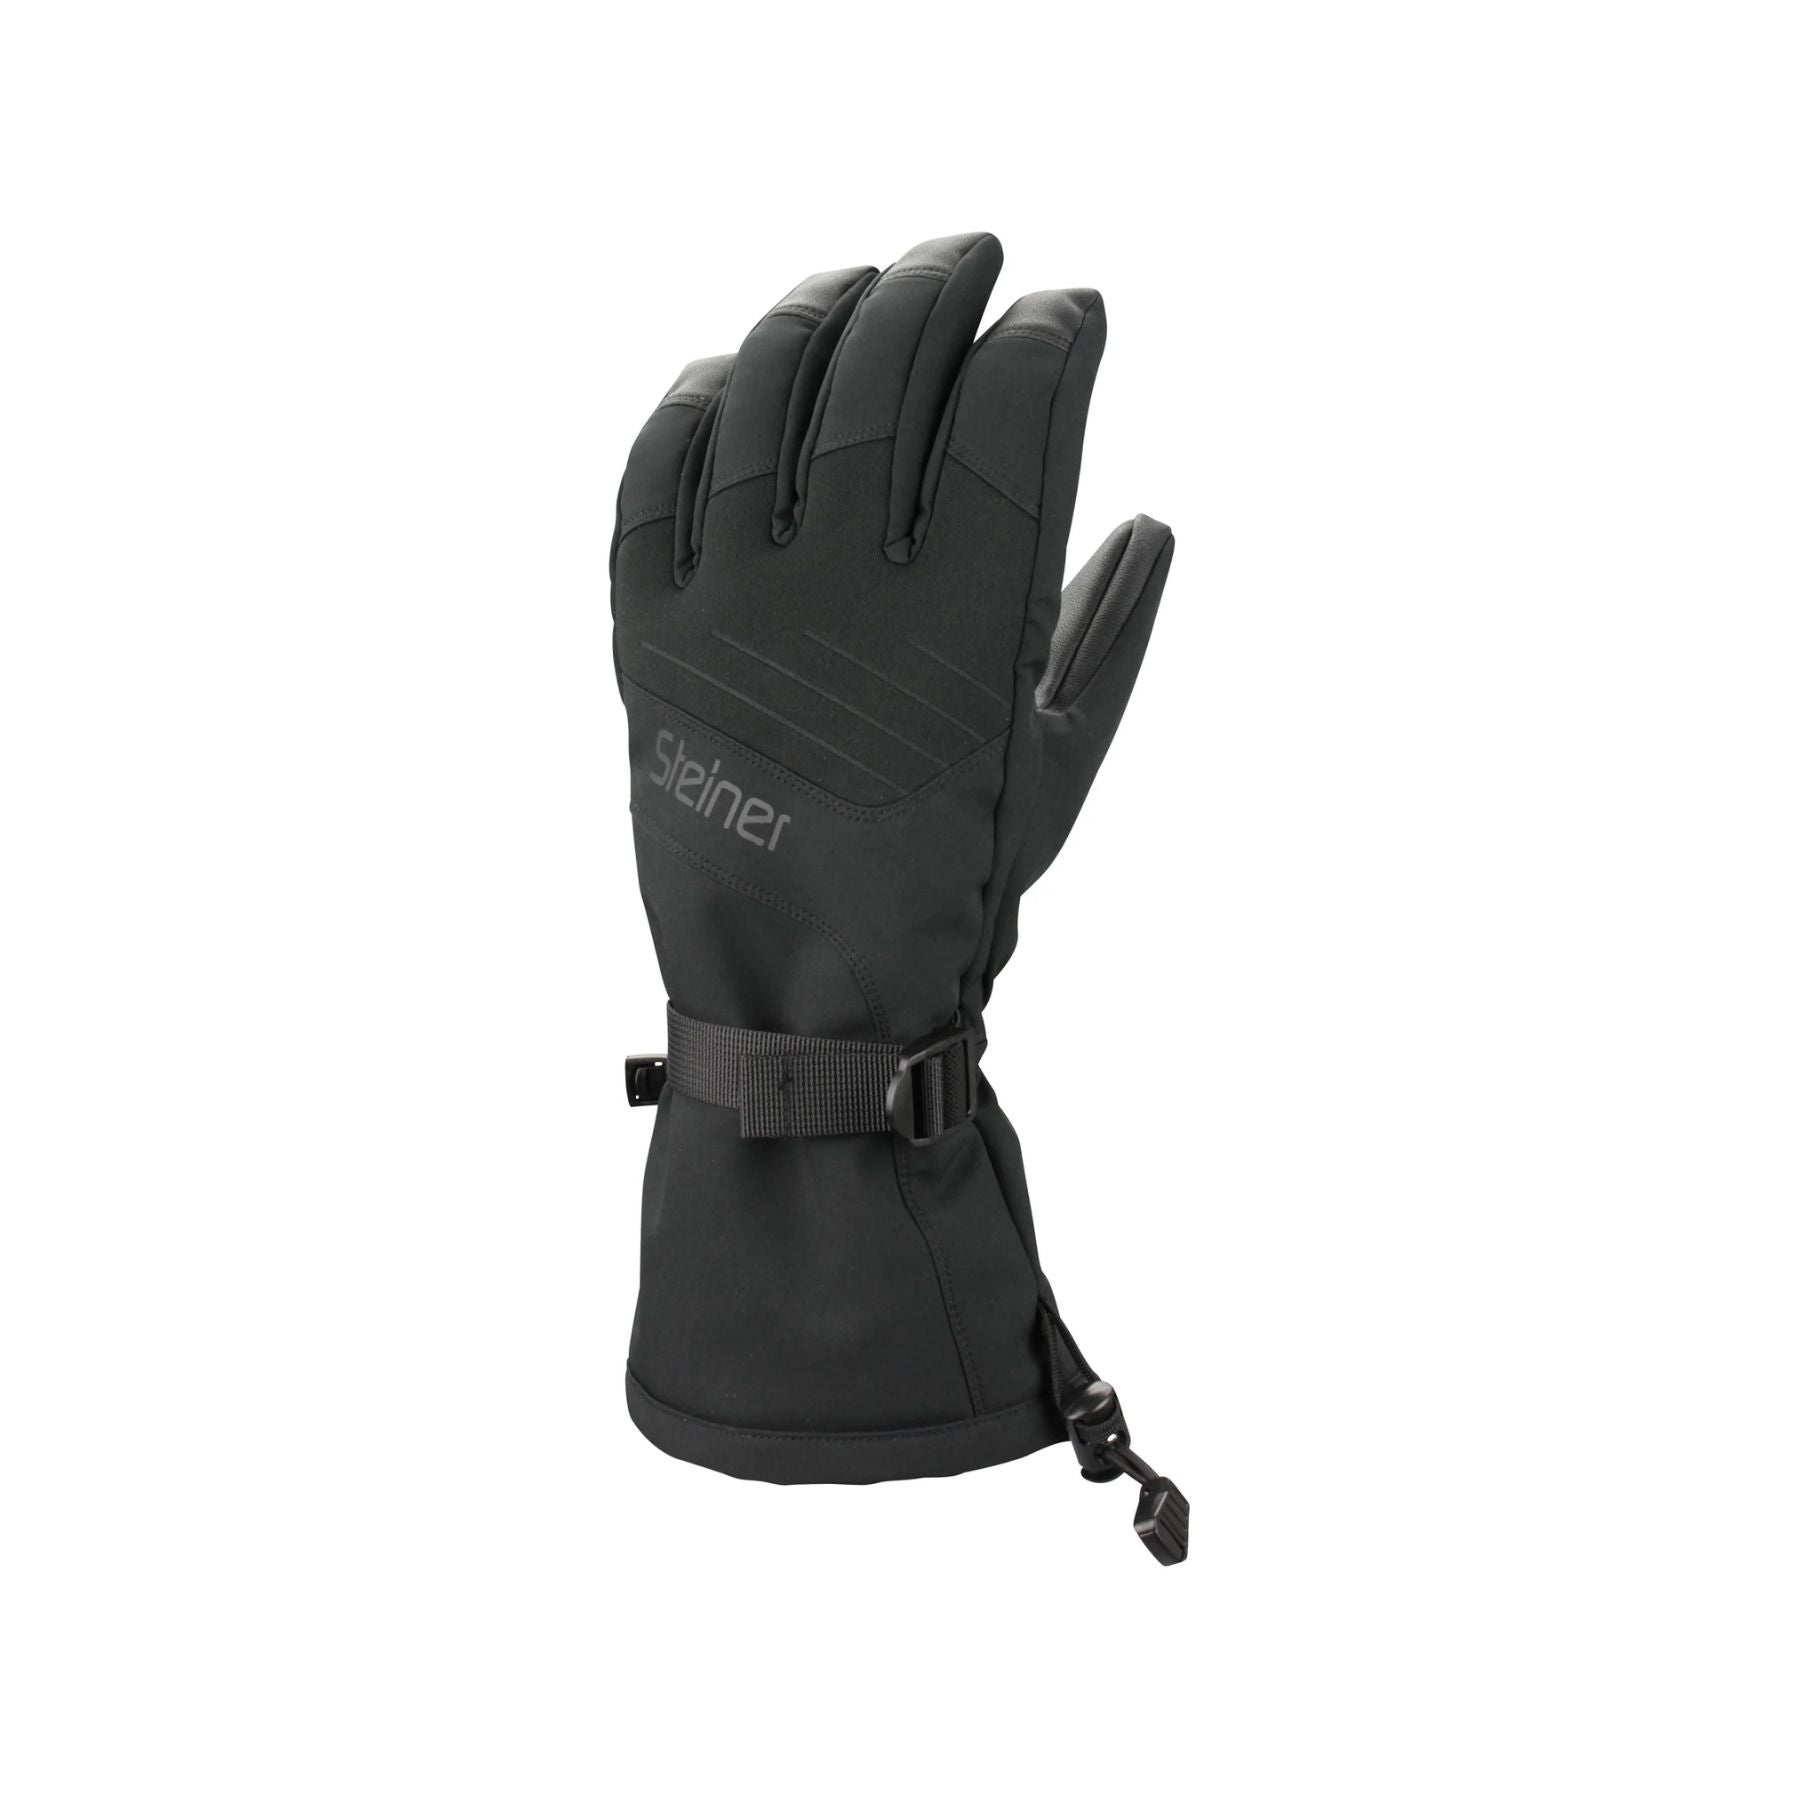 Steiner Kid's Mountain Ski Glove in Black